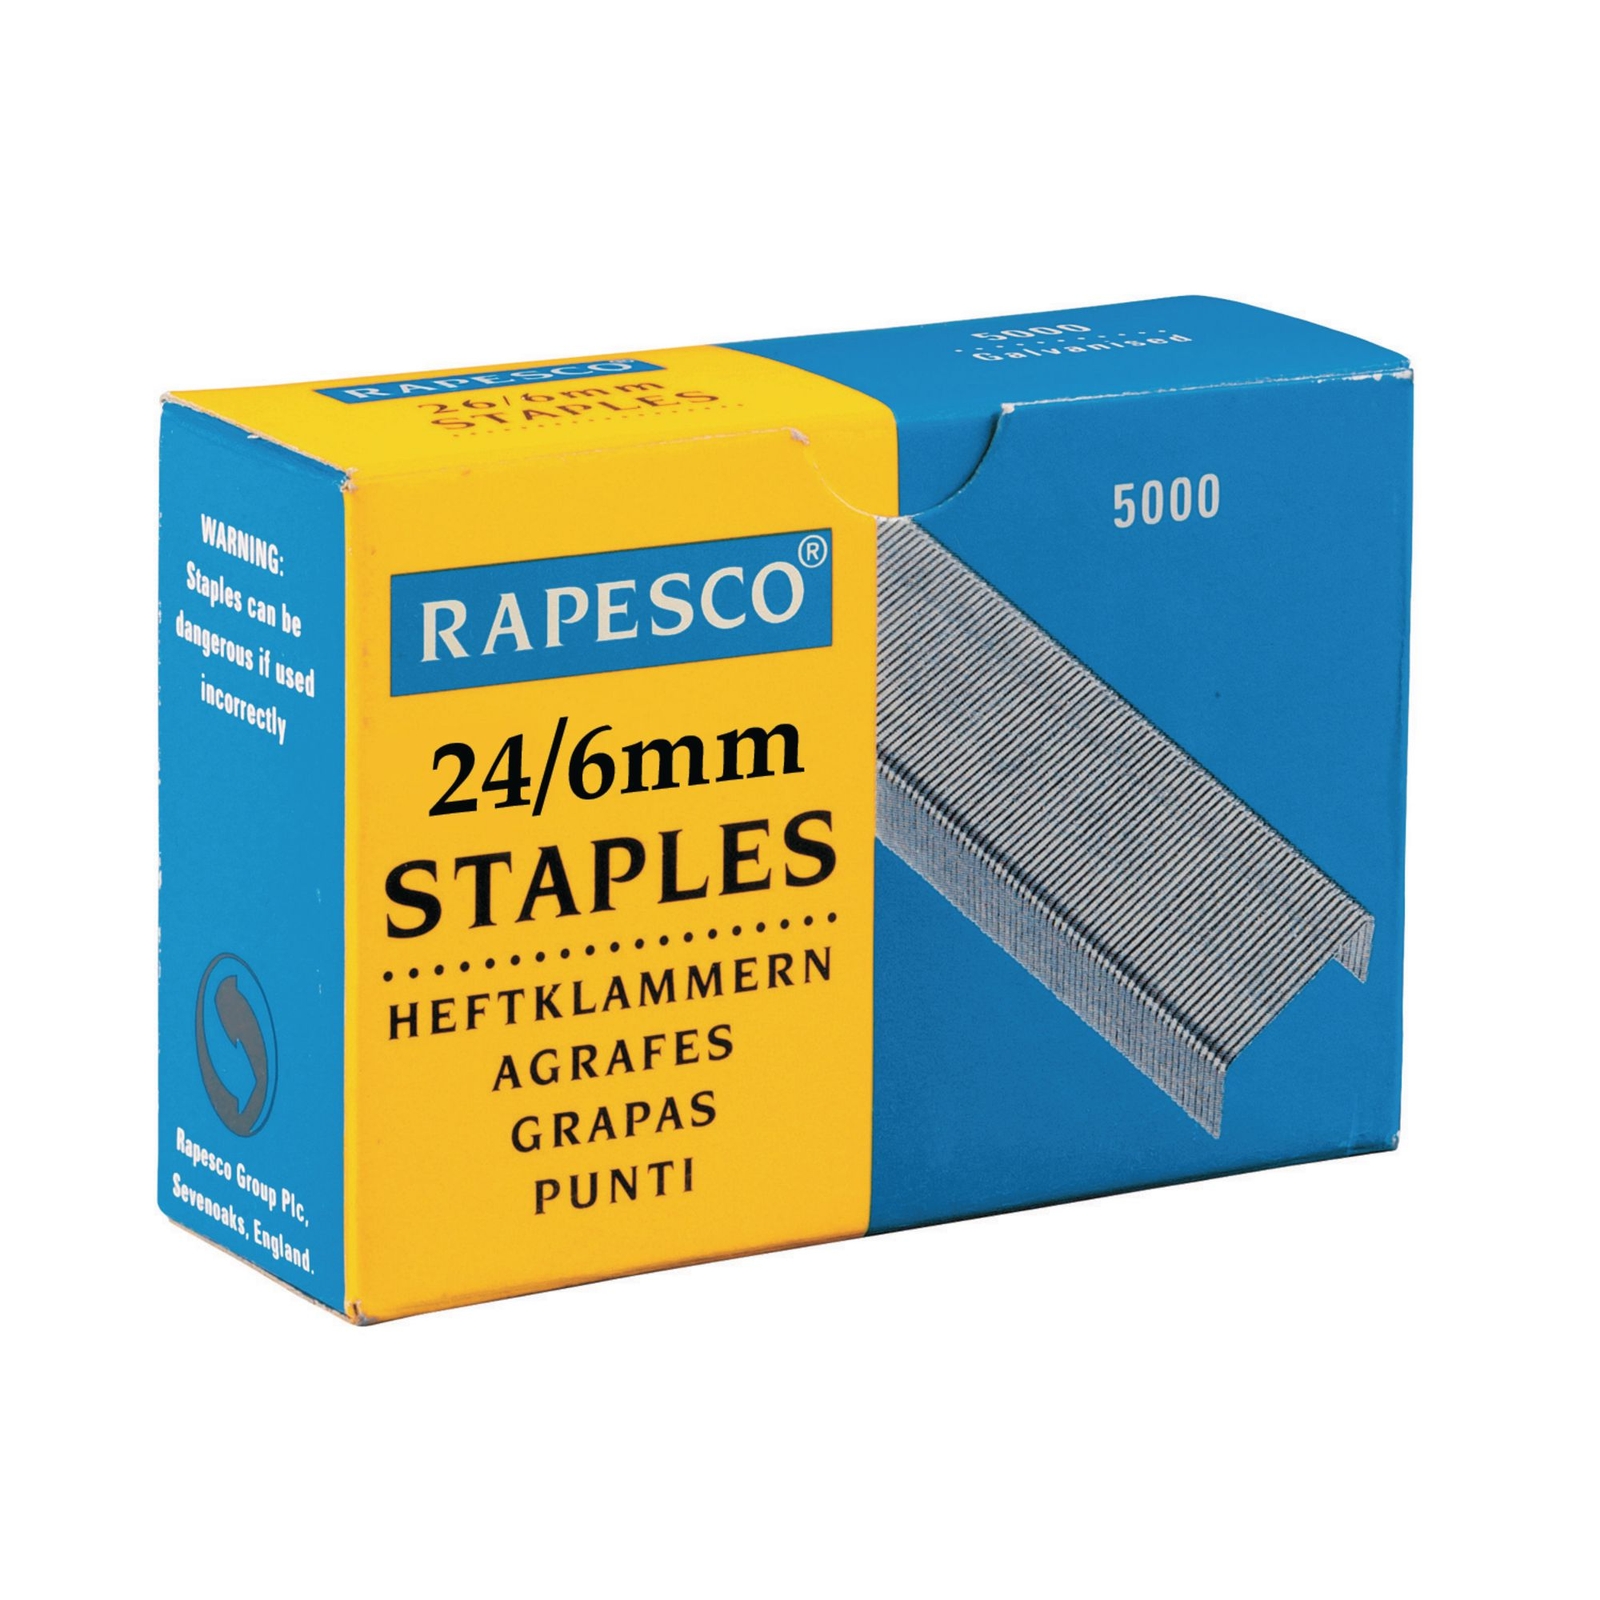 Rapesco Staples24/6mm - Pack of 5000